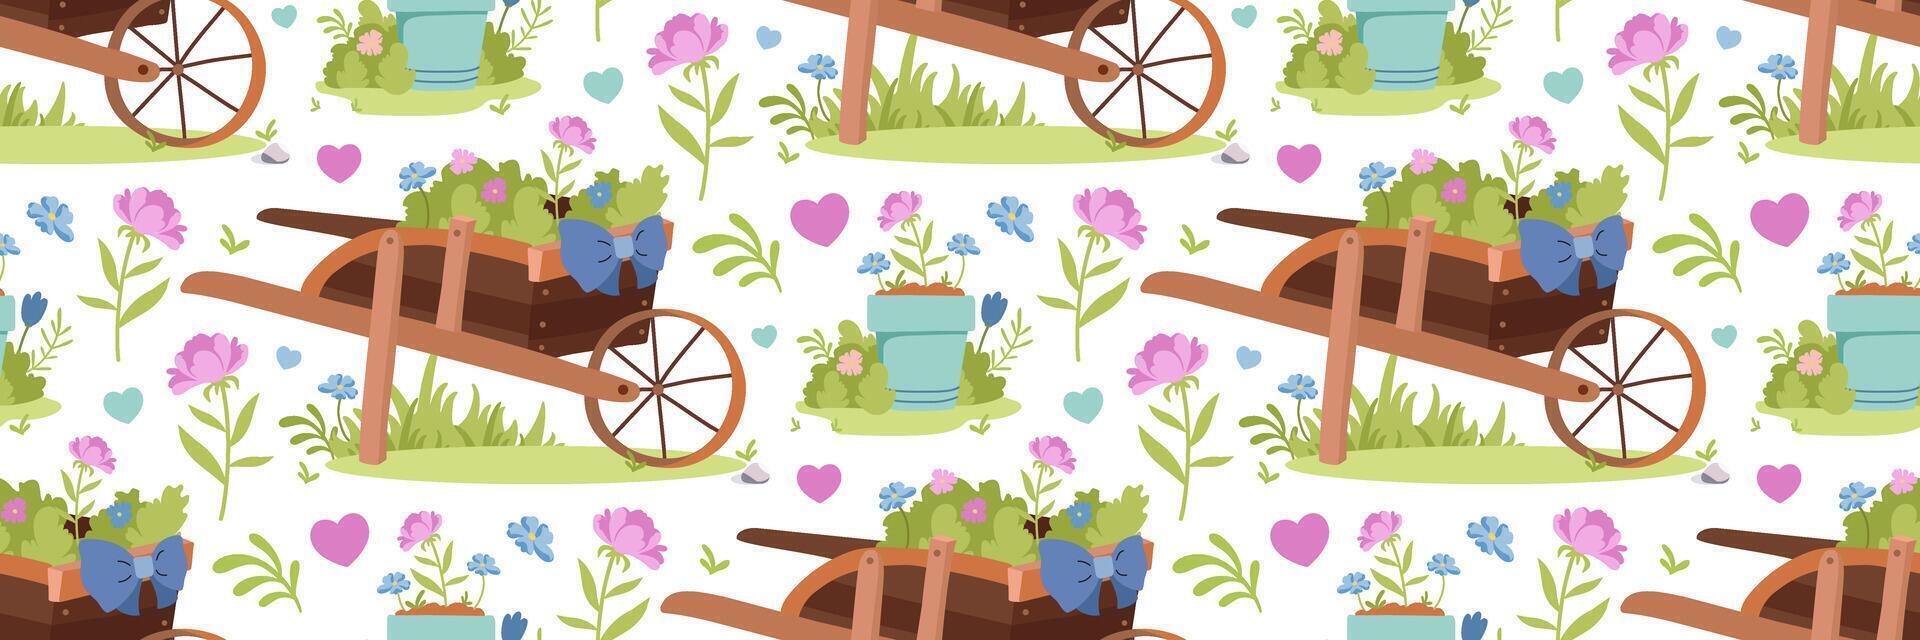 tuin decoratief kruiwagen patroon. voorjaar vakantie versierd kar en kamerplant in pot. bloemen en hart. achtergrond voor textiel, behang, verpakking, uitnodiging, ansichtkaart. vector illustratie.